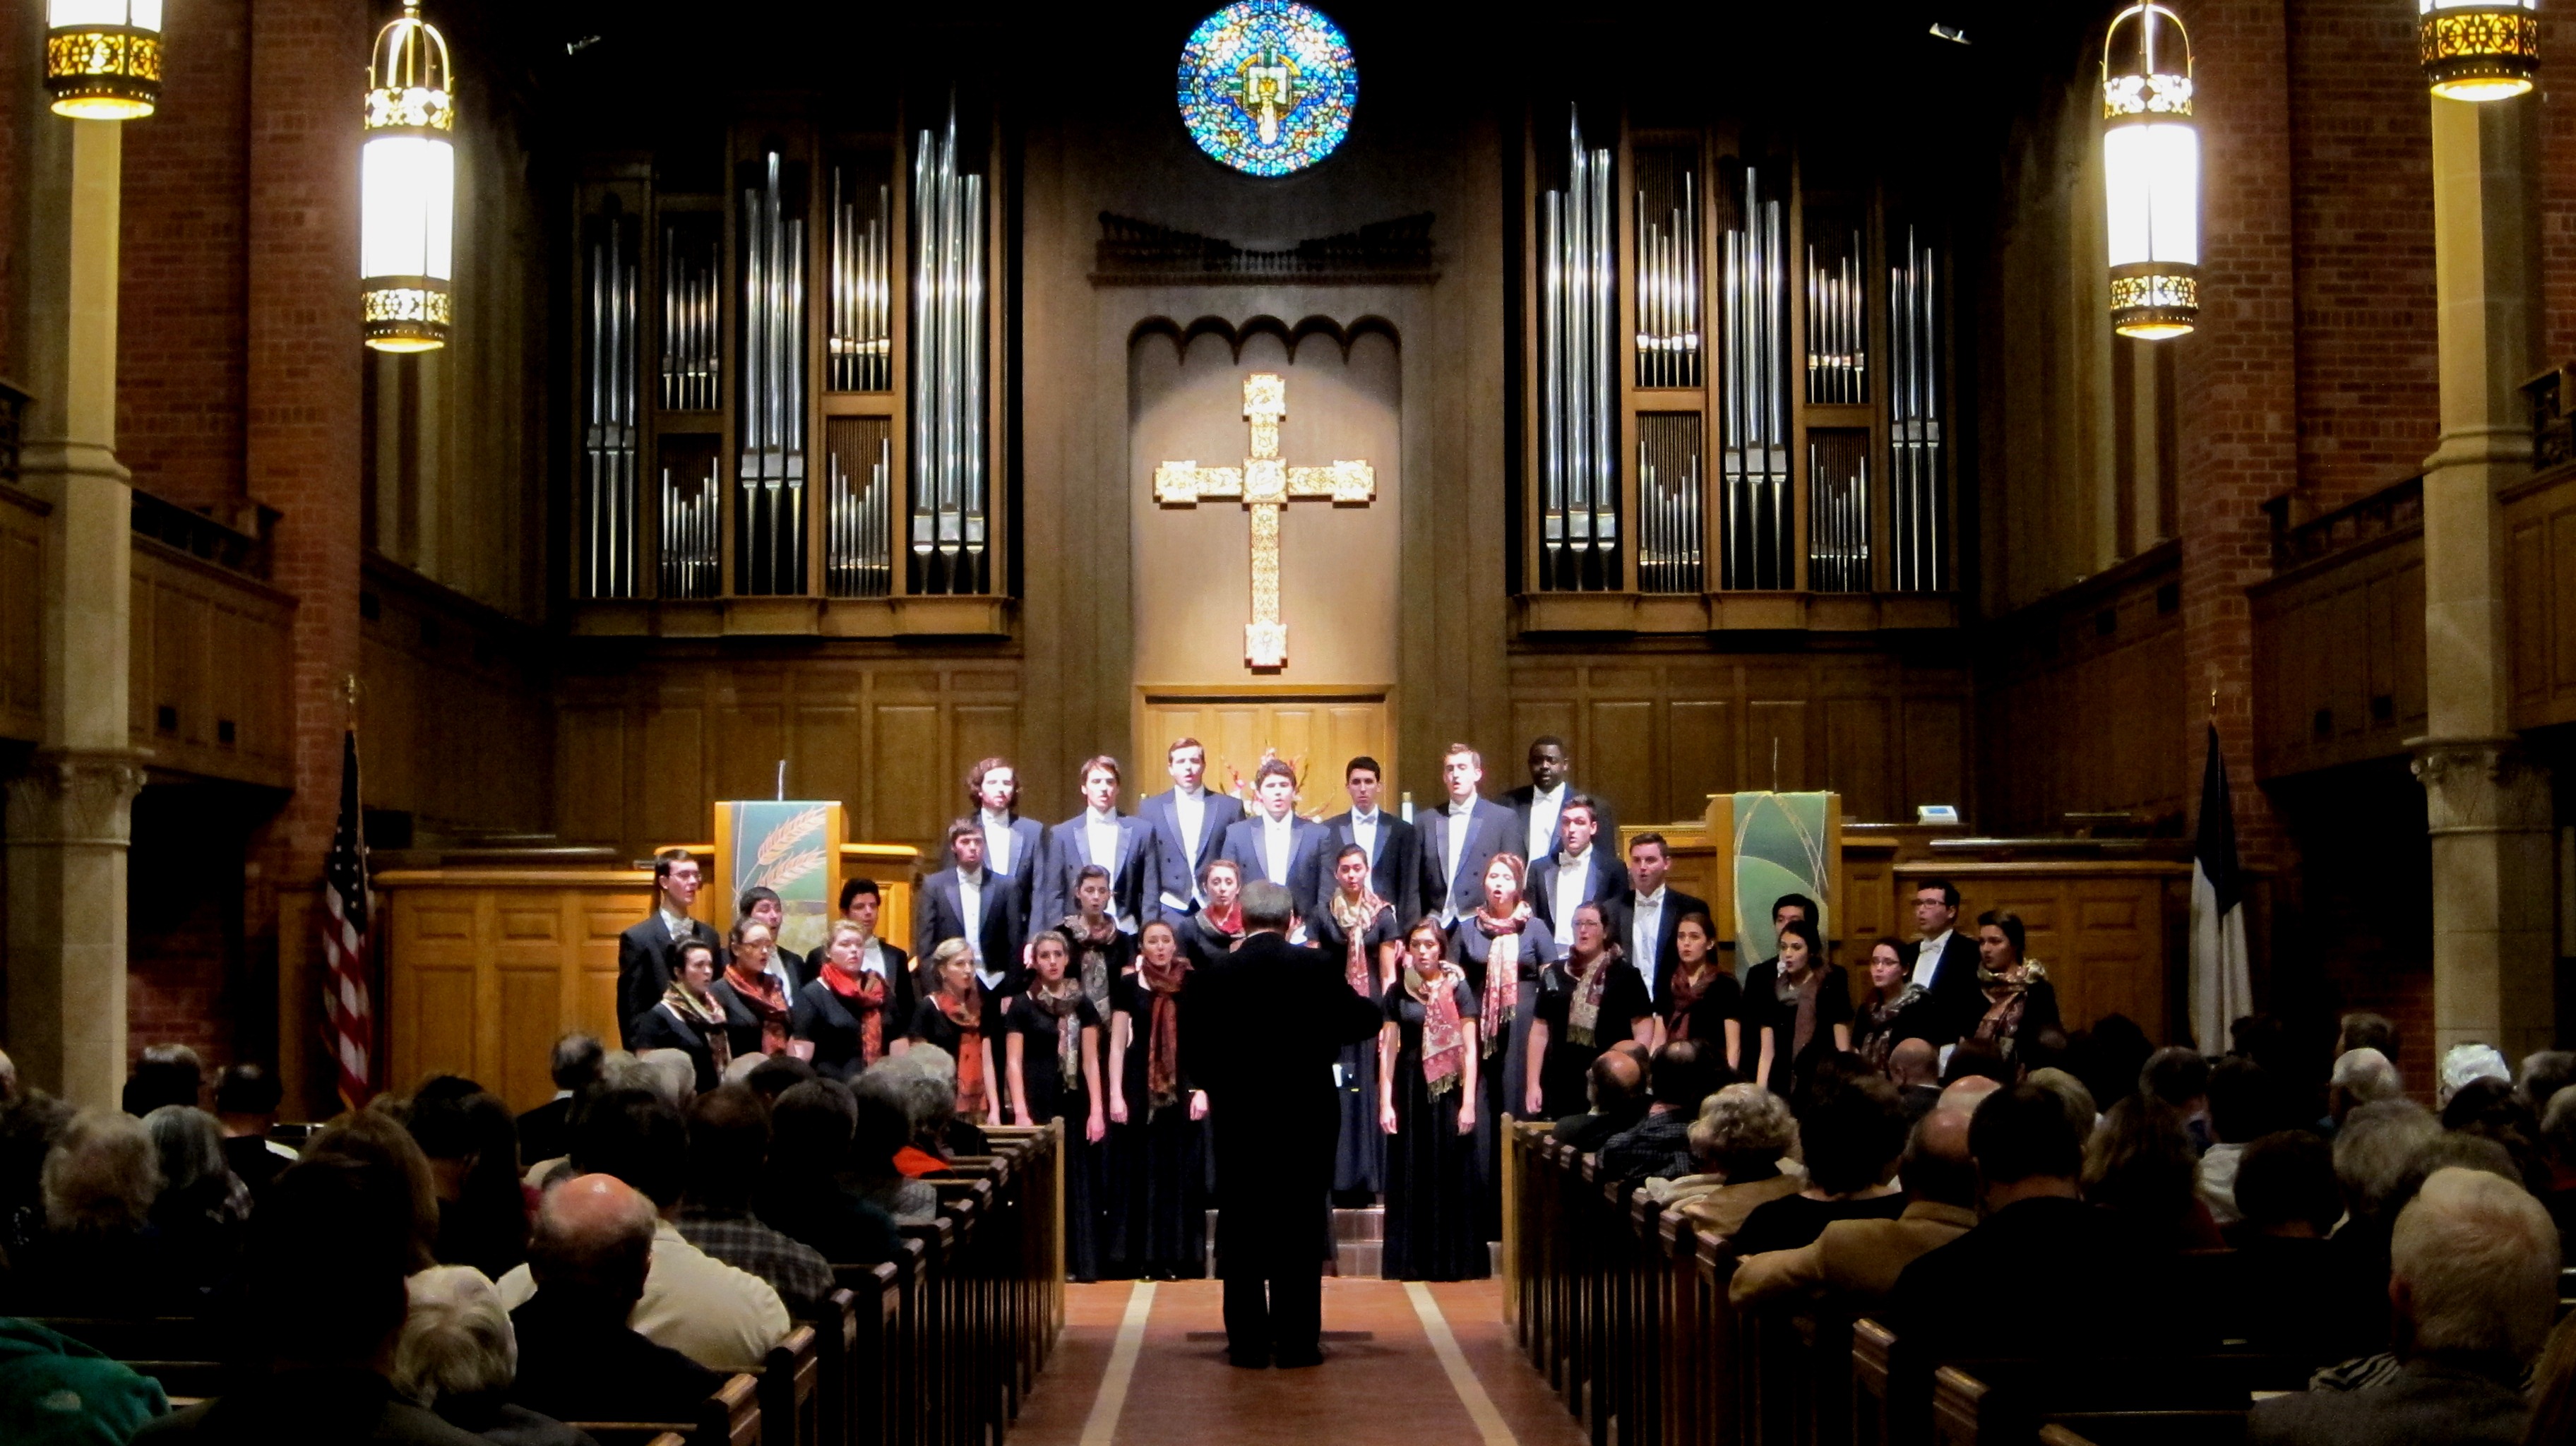 choir sings in church